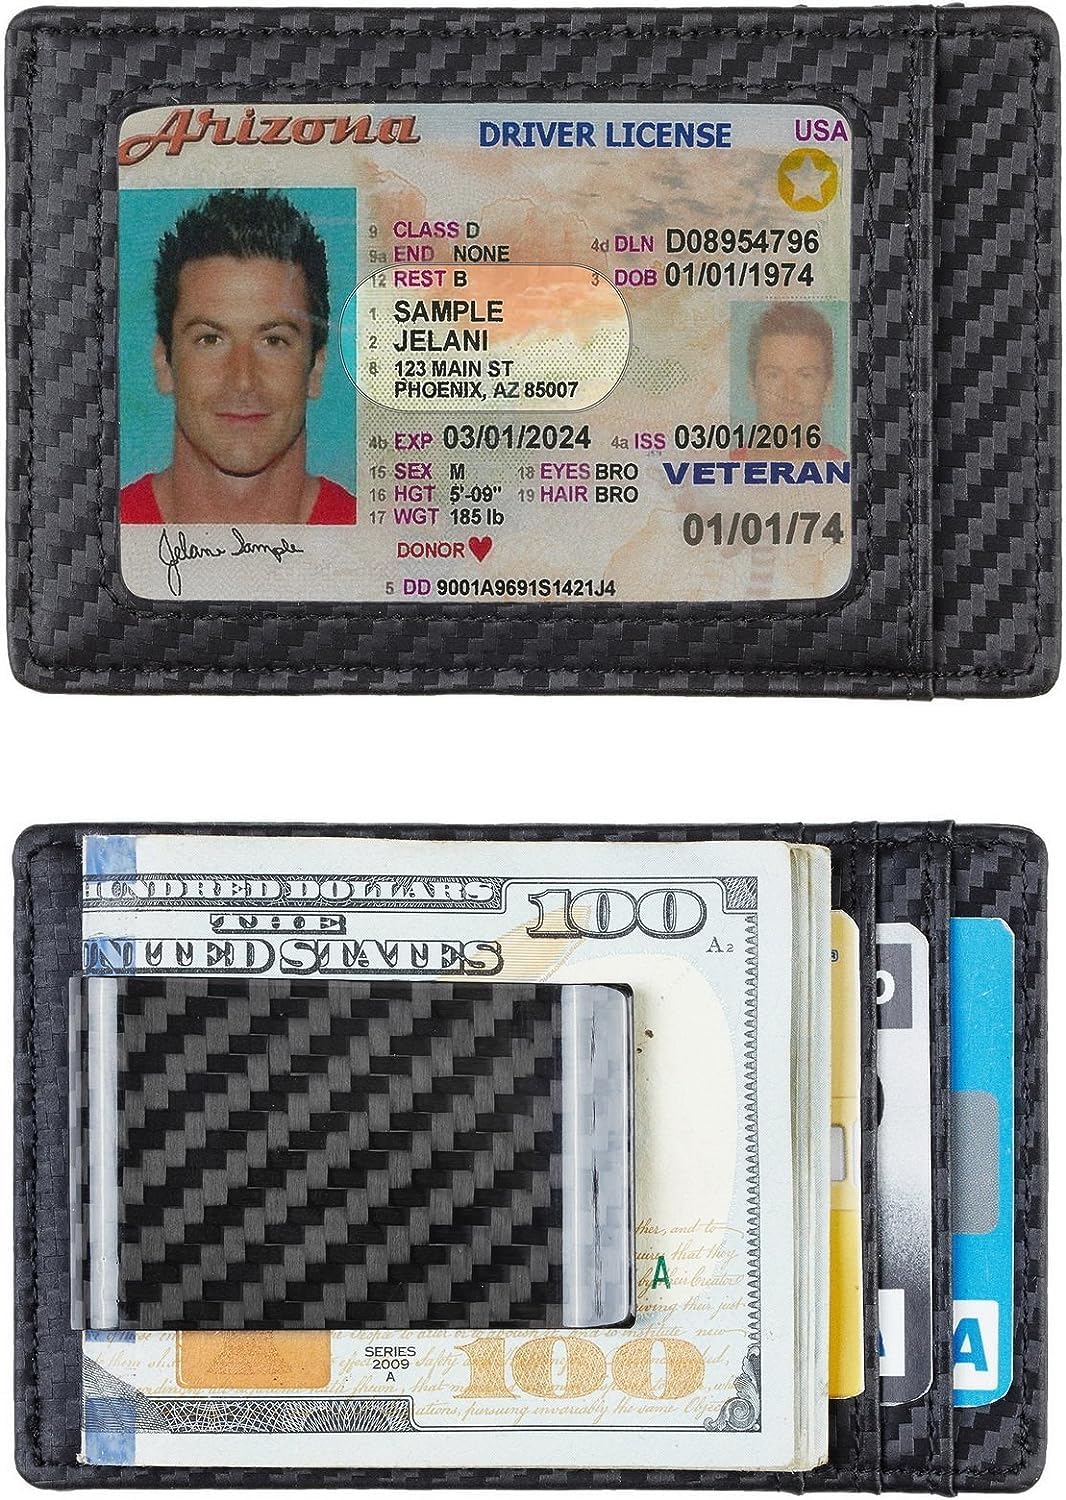 Travelambo Carbon Fiber Money Clip Wallet for Men Slim Minimalist Front Pocket Wallet Card Holder RFID Blocking (Weaved Black)